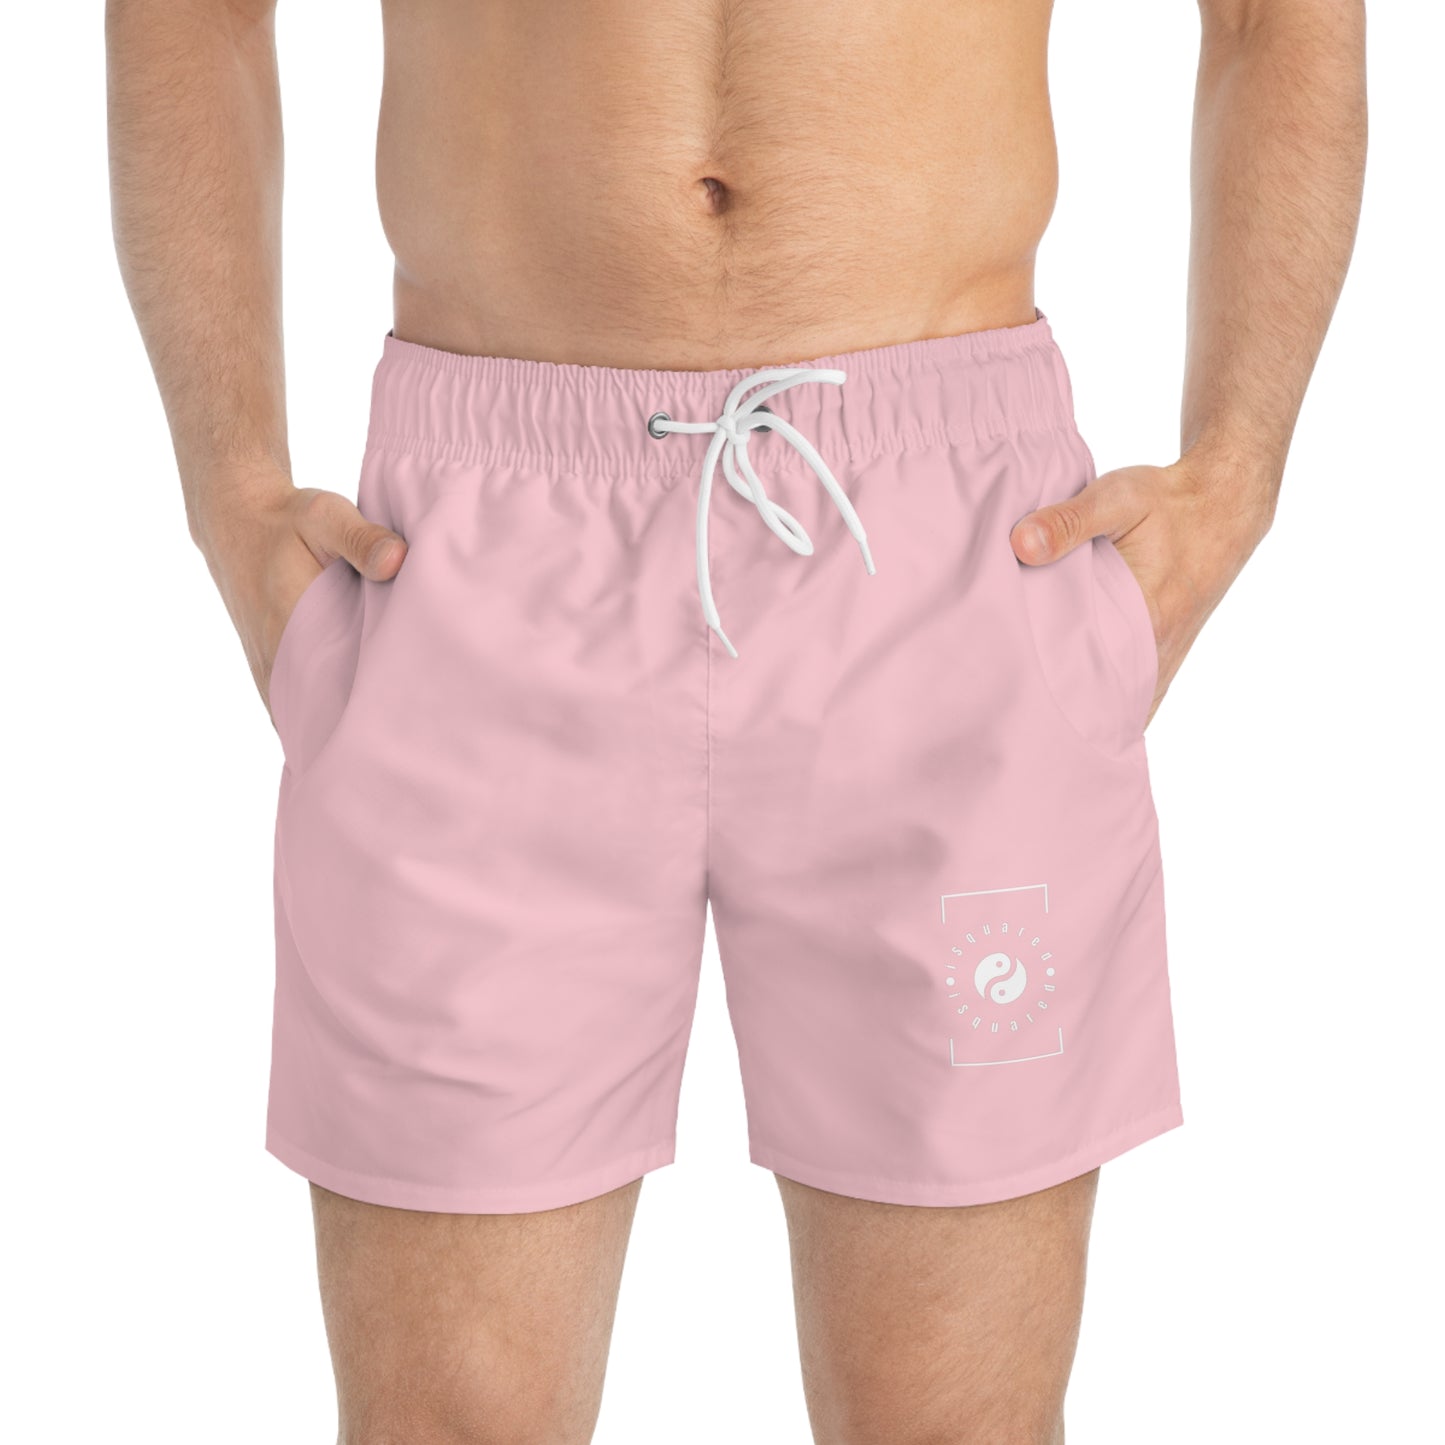 FFCCD4 Light Pink - Swim Trunks for Men